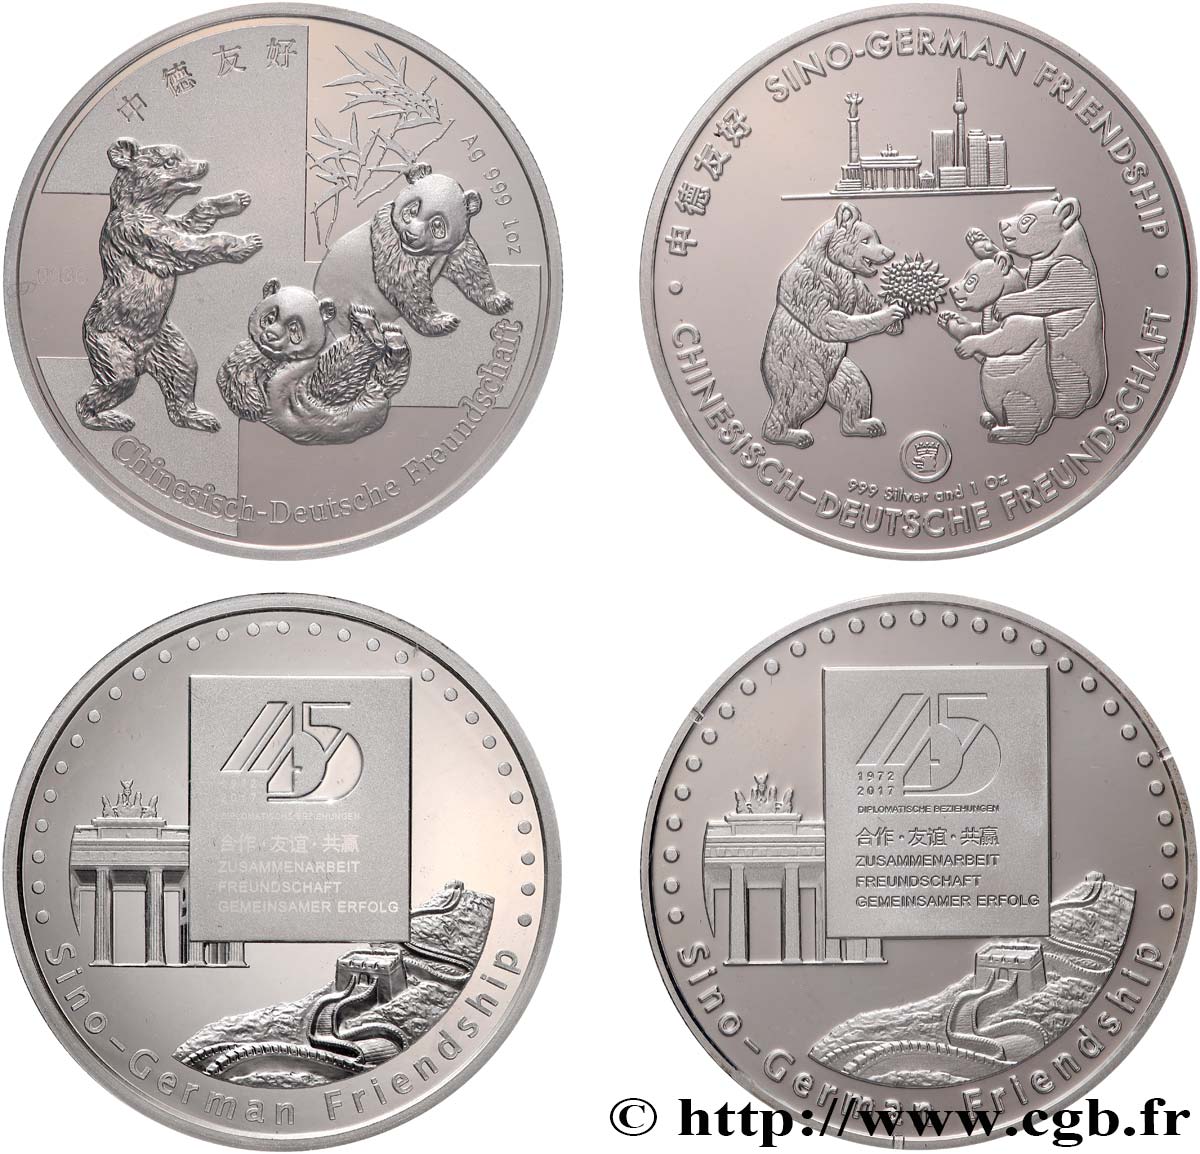 ALEMANIA Médailles commémoratives, 45e anniversaire de l’amitié sino-allemande FDC